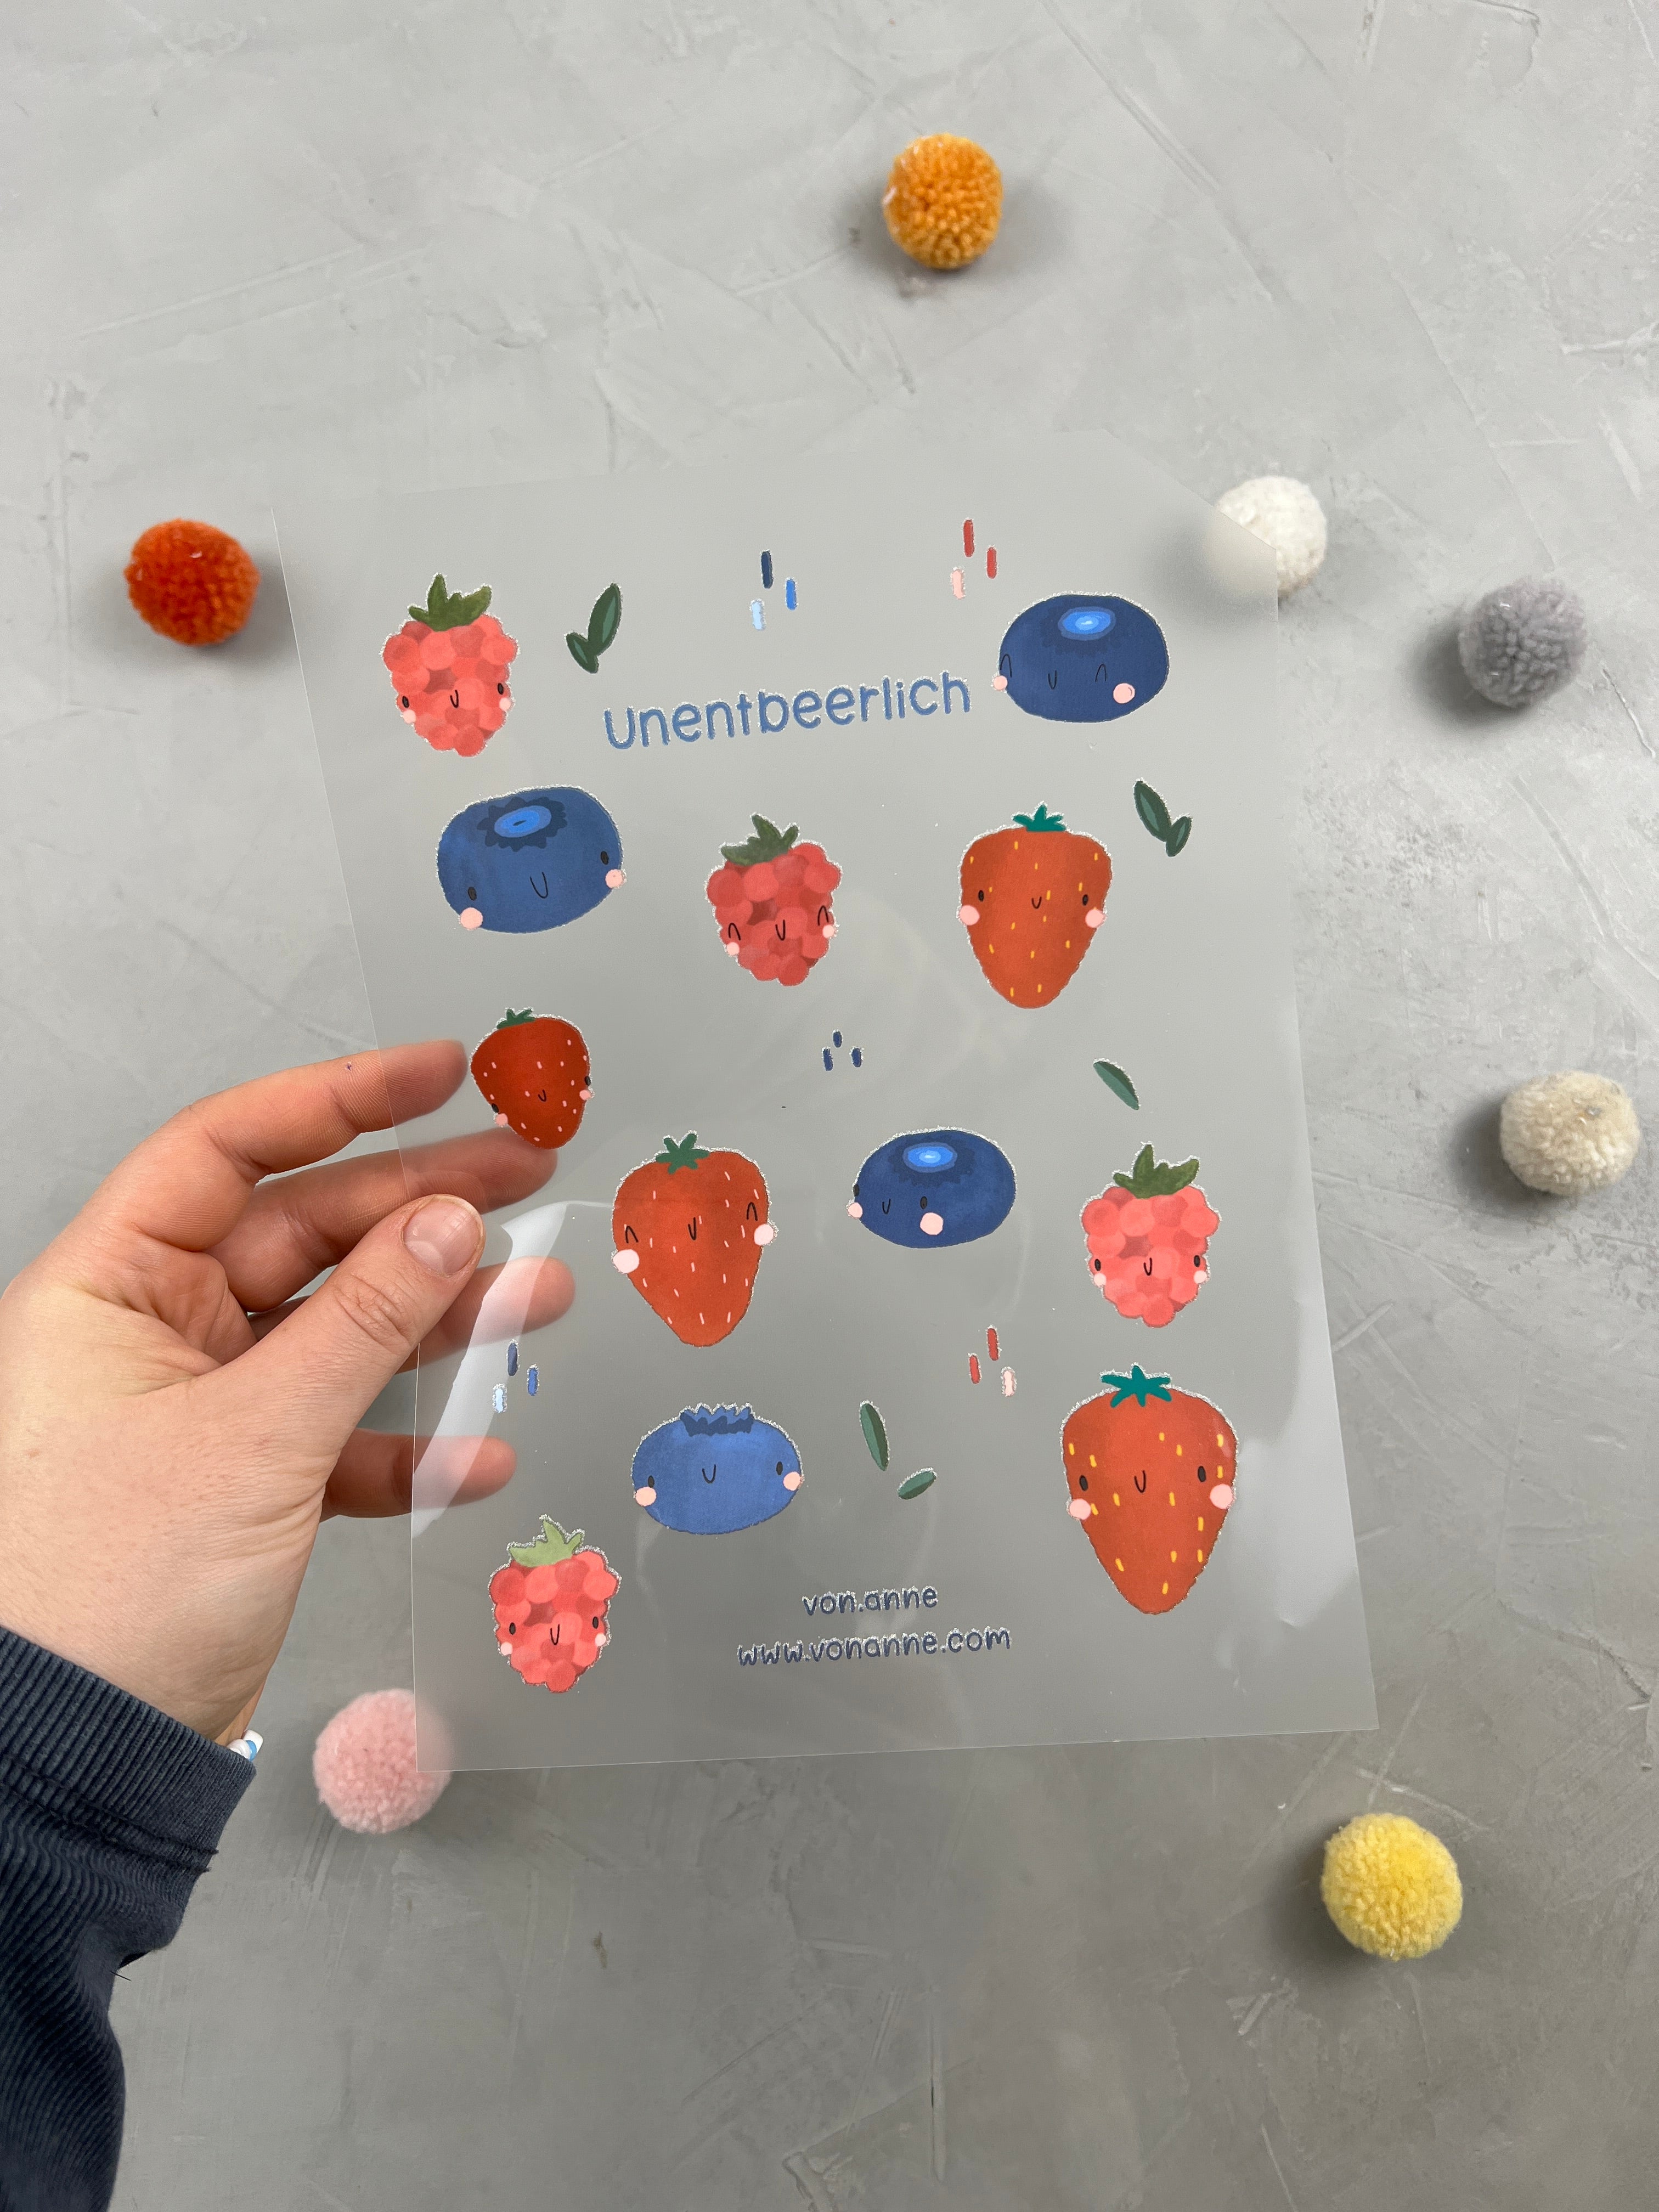 Bügelbildbogen - All the single berries